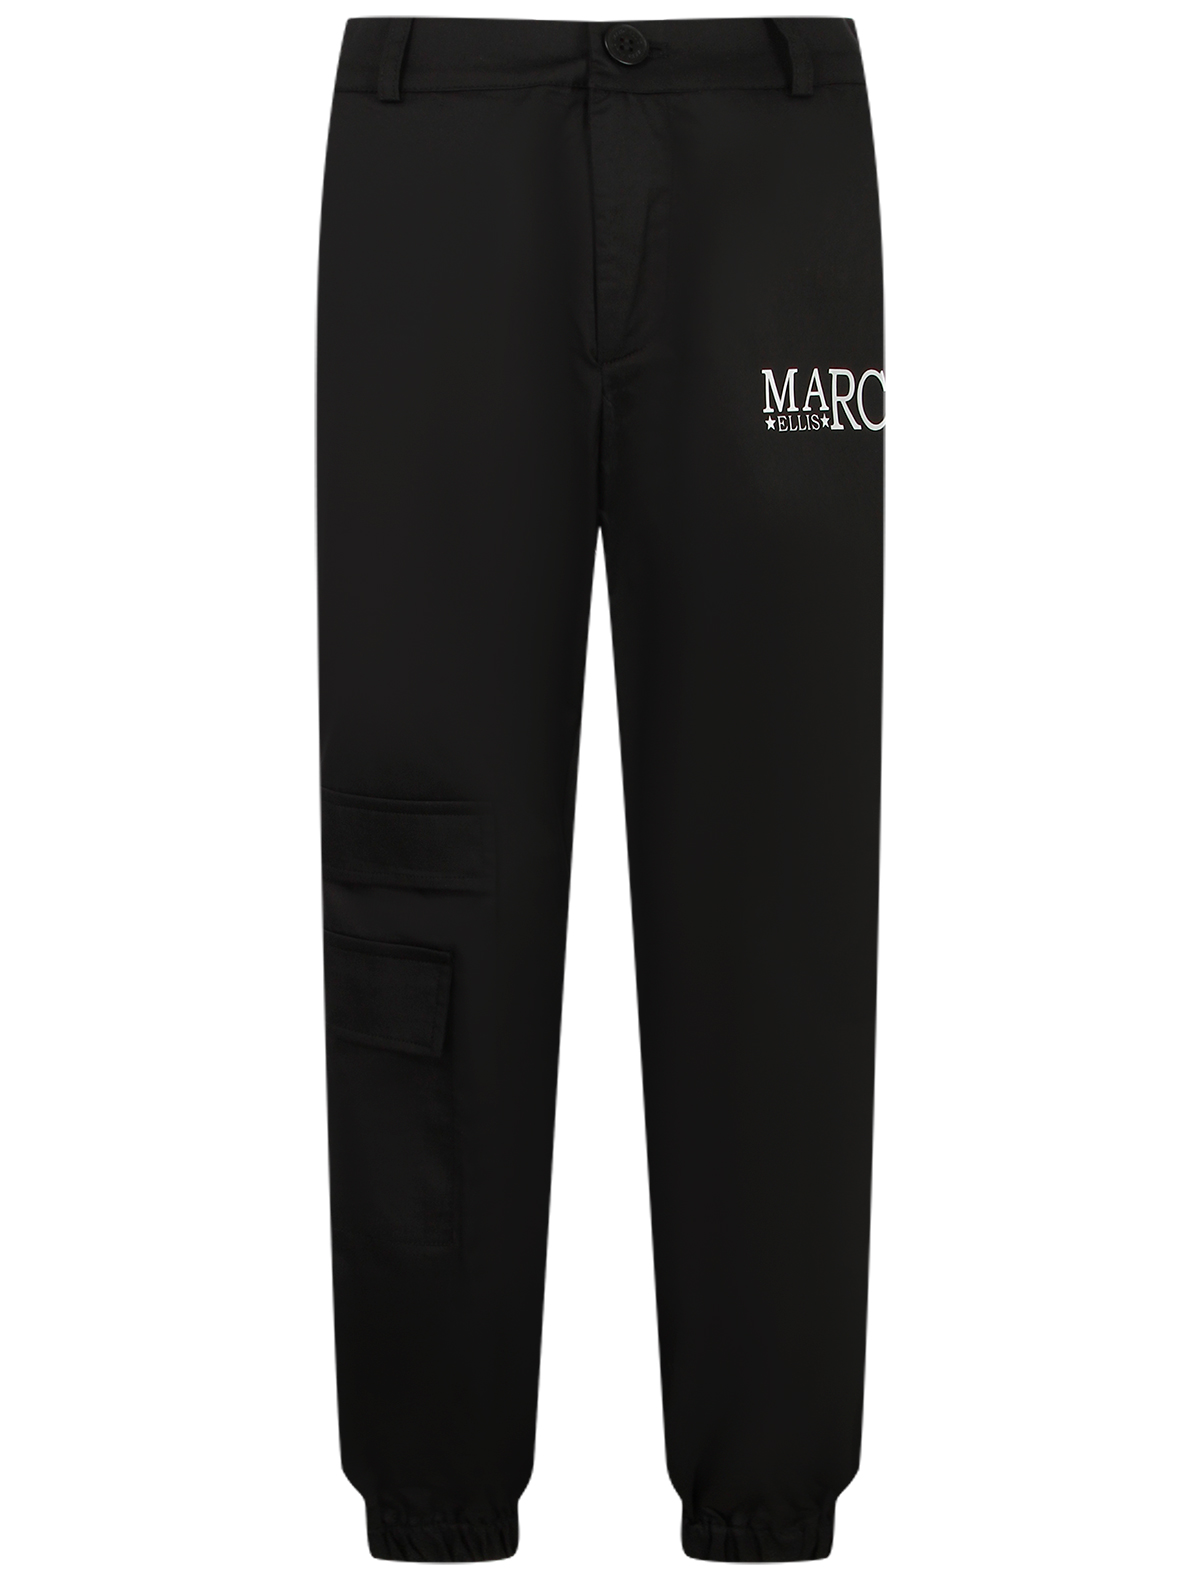 брюки marc ellis для девочки, черные